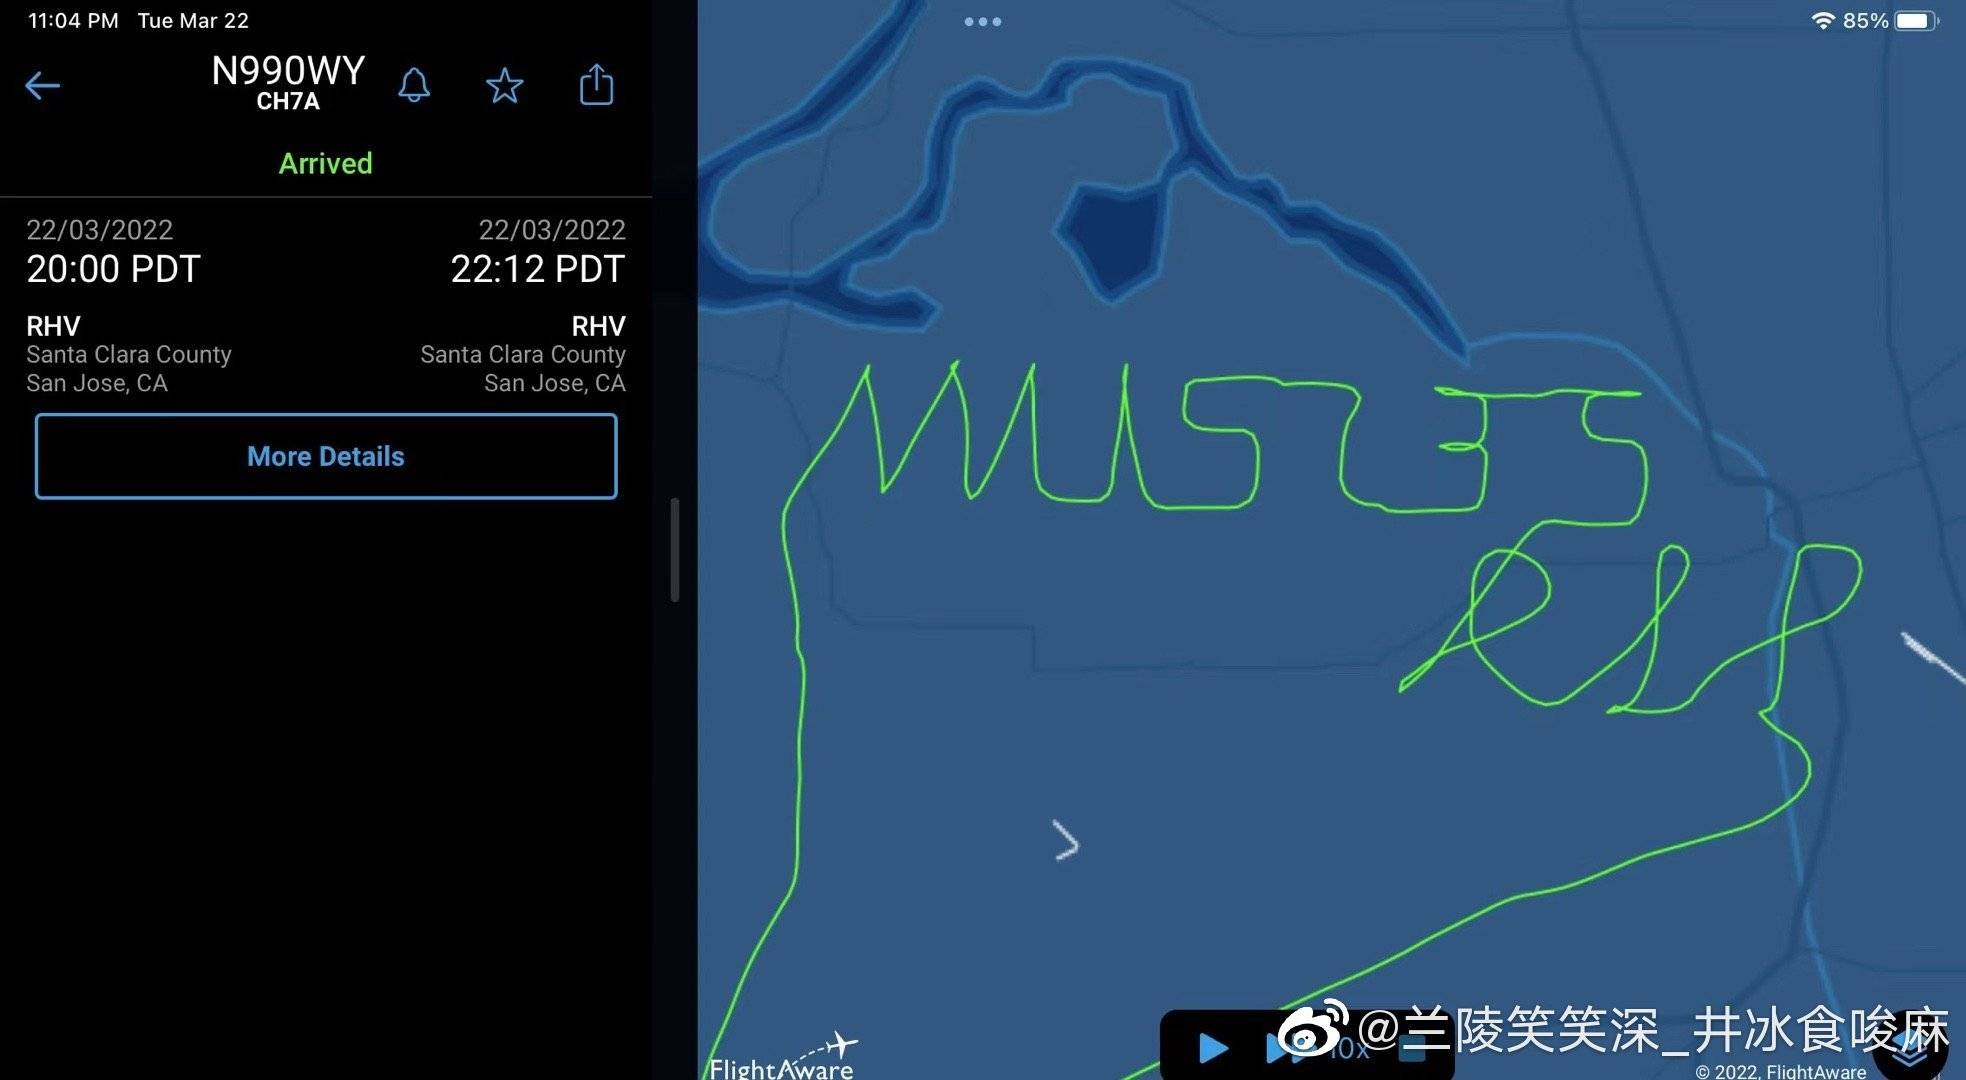 美国一飞机用轨迹写下“MU5735 RIP”引关注